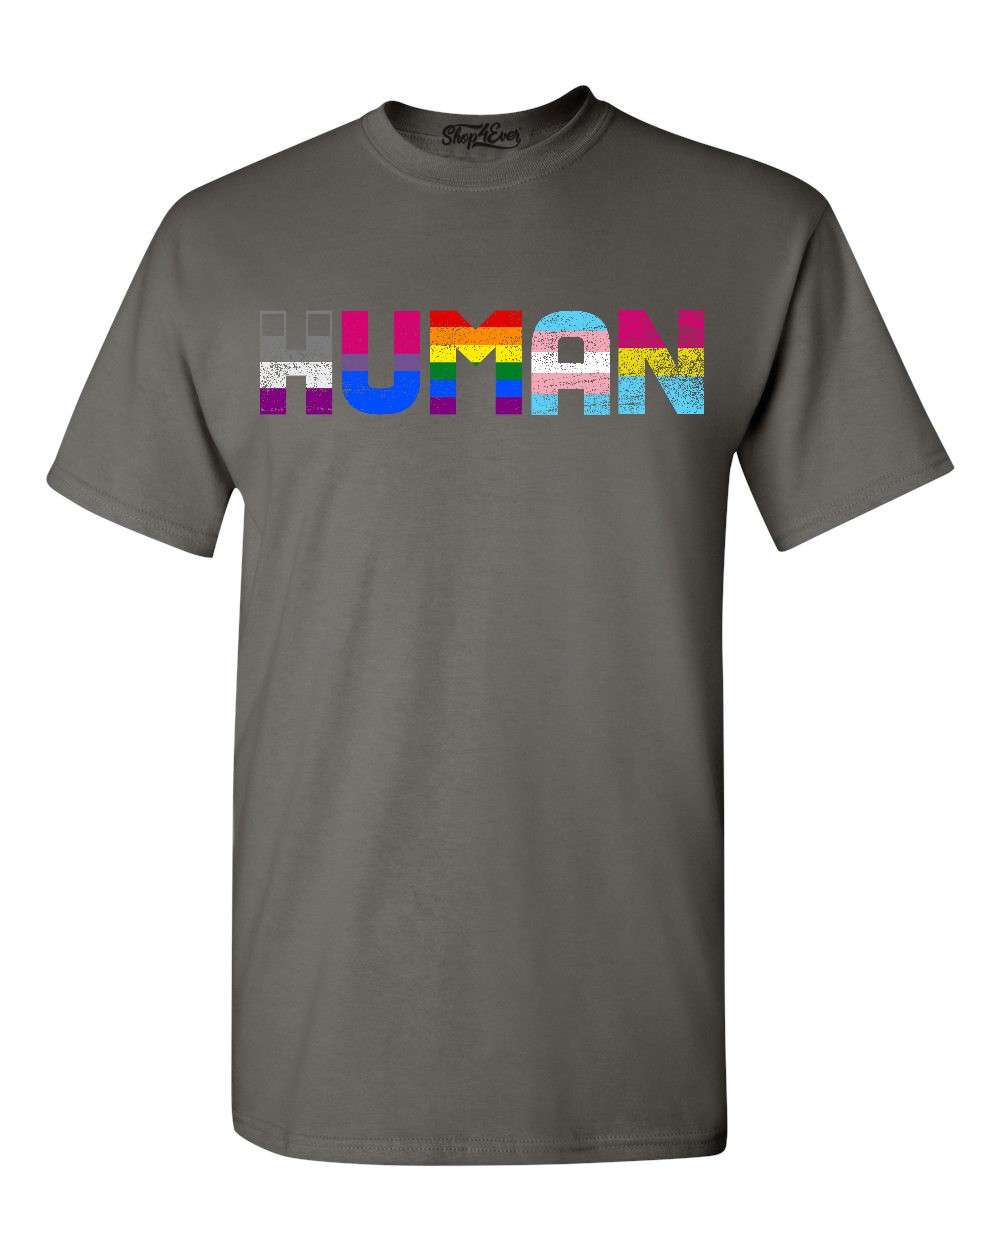 Rainbow love shirt LGBTQ pride shirt Pride gift Pride month shirt Rainbow pride shirt Gender Neutral Shirt,Trans pride Gay pride shirt